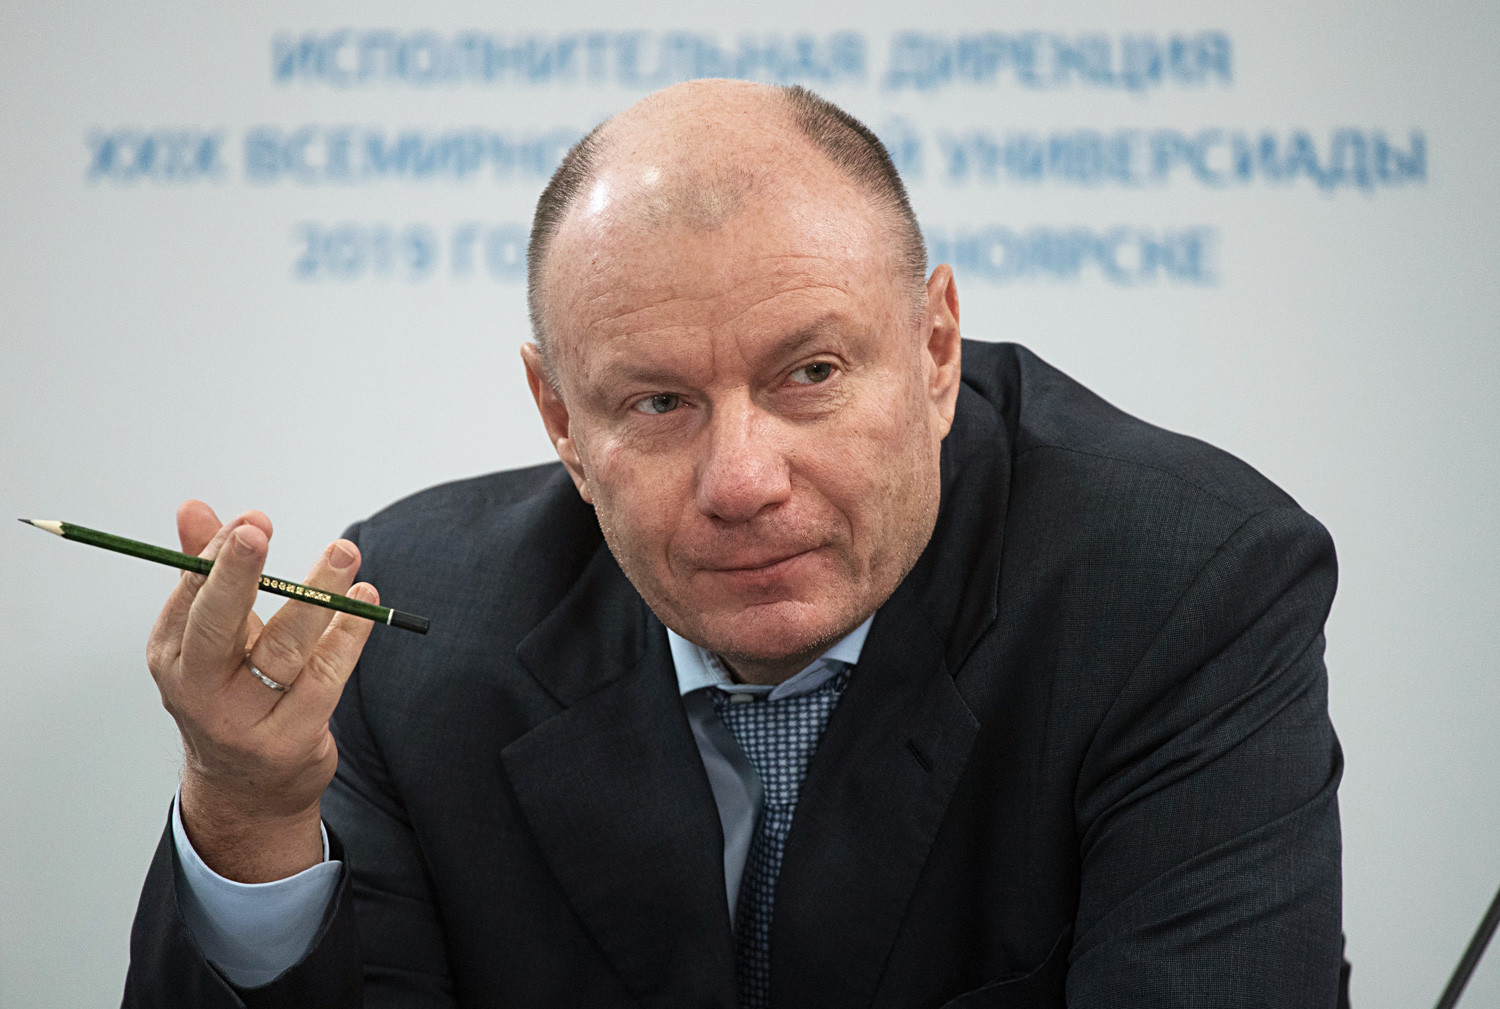 Šef Norilskega niklja Vladimir Potanin, eden od najmočnejših ruskih poslovnežev današnjega časa.